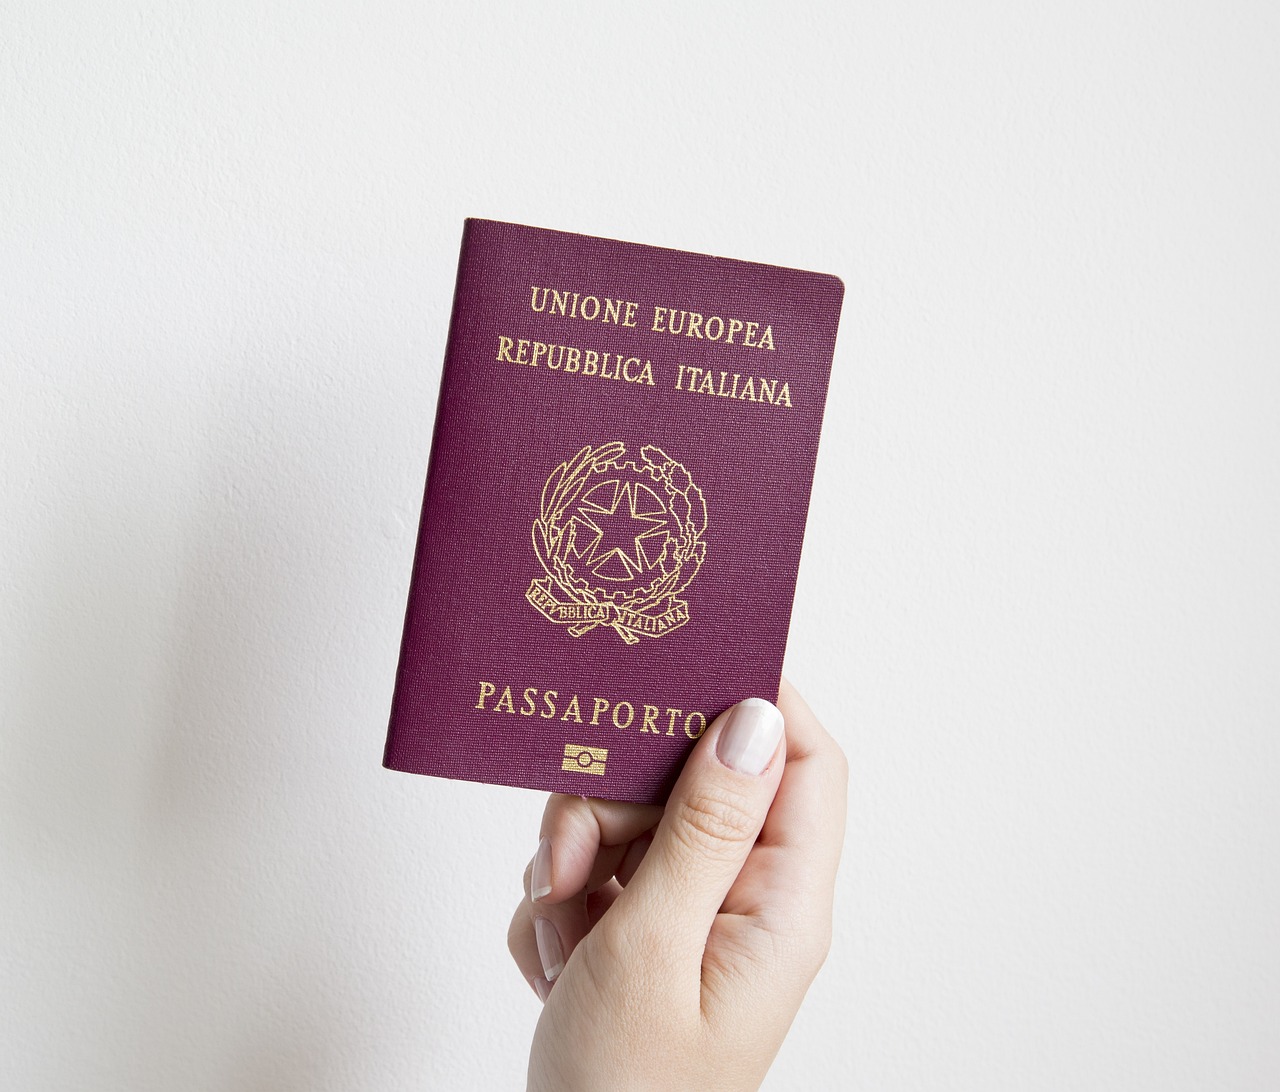 How Do I Urgently Get A U.S. Visa?